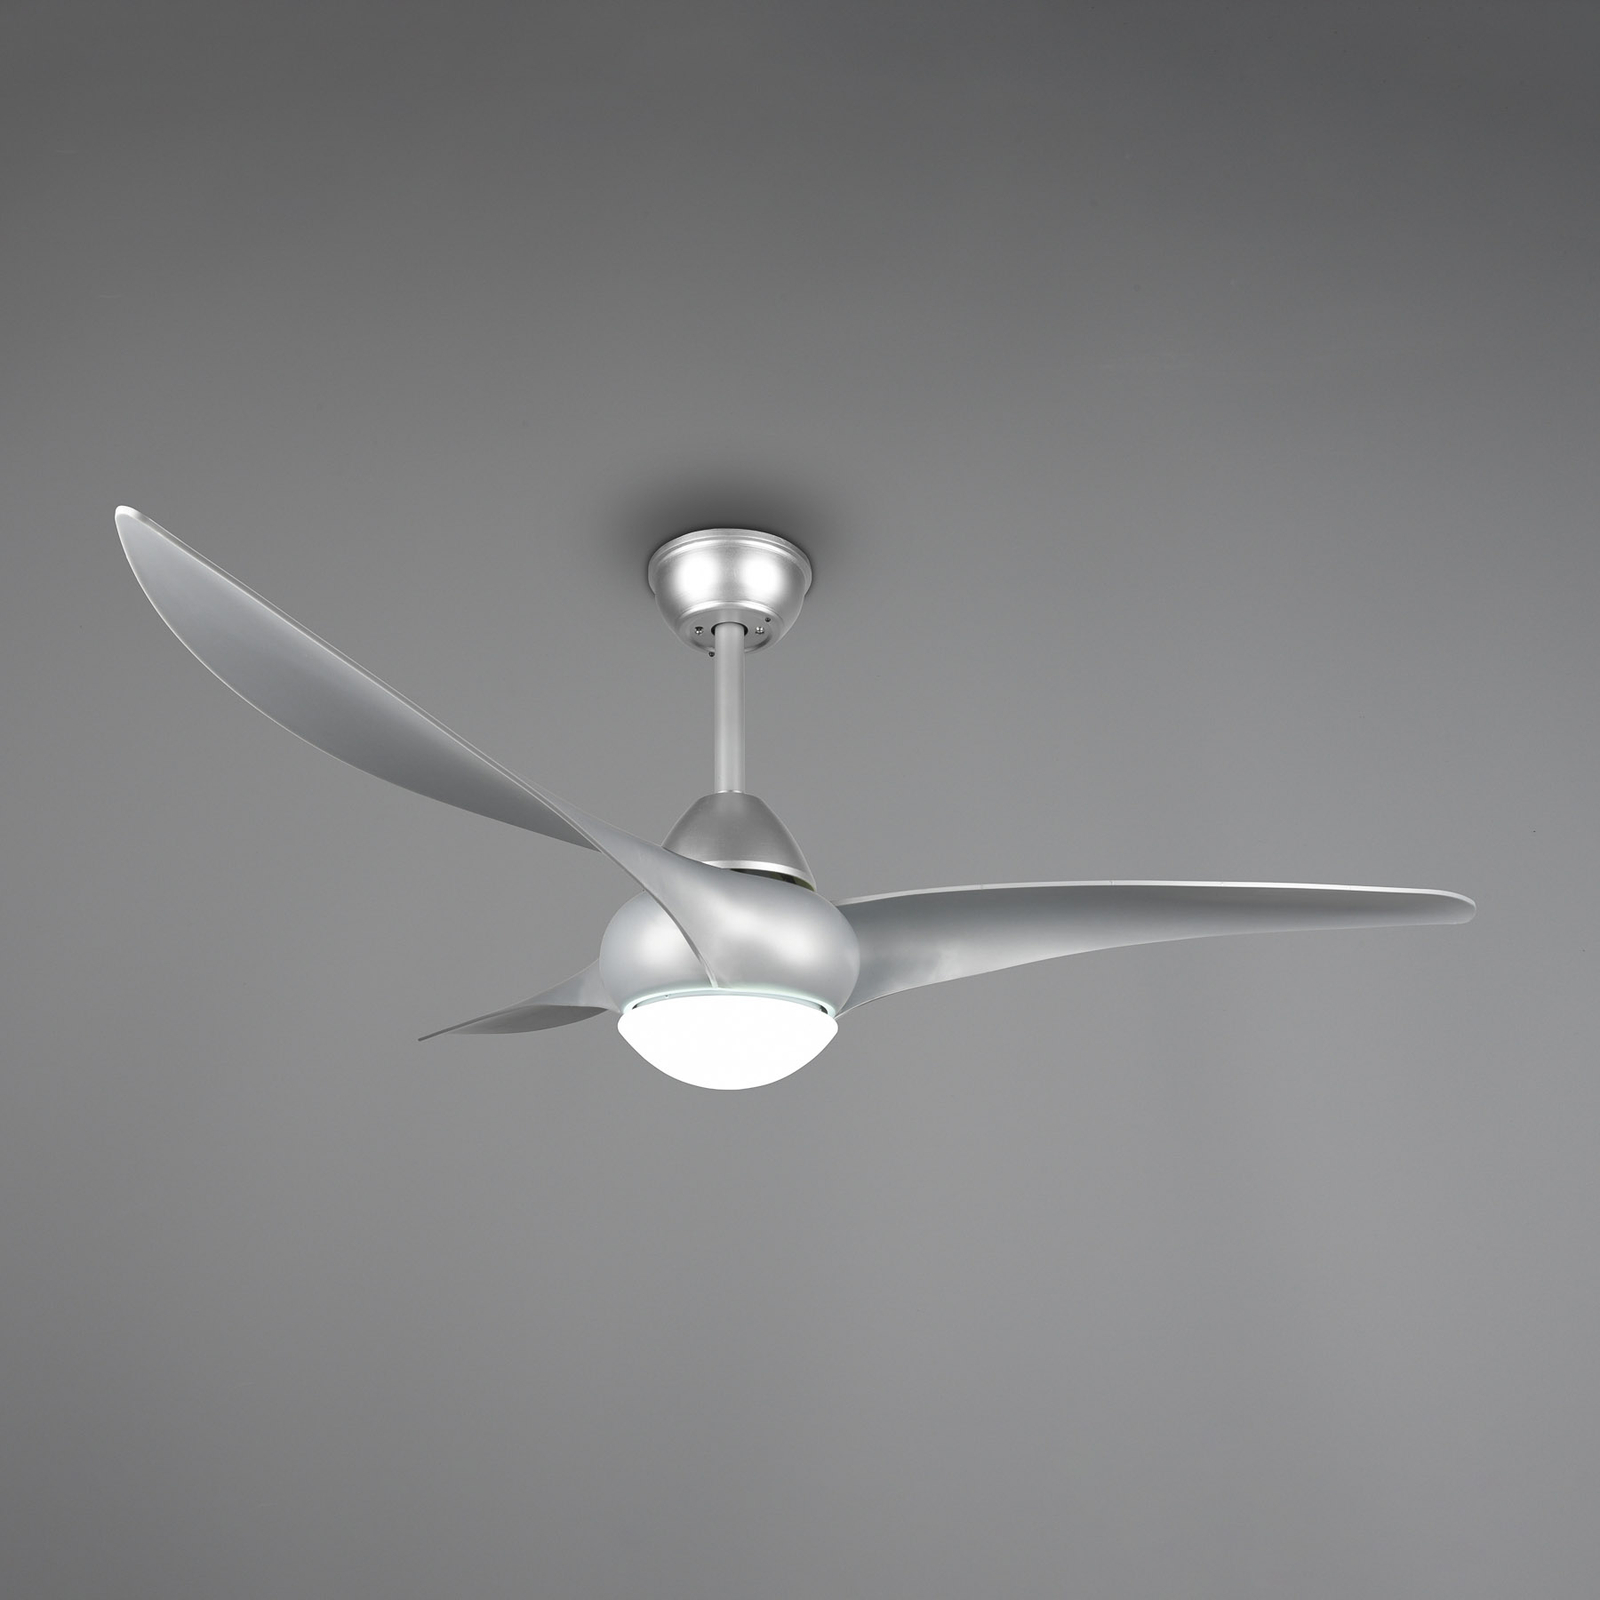 LED-Ventilator Alesund mit Fernbedienung, titan